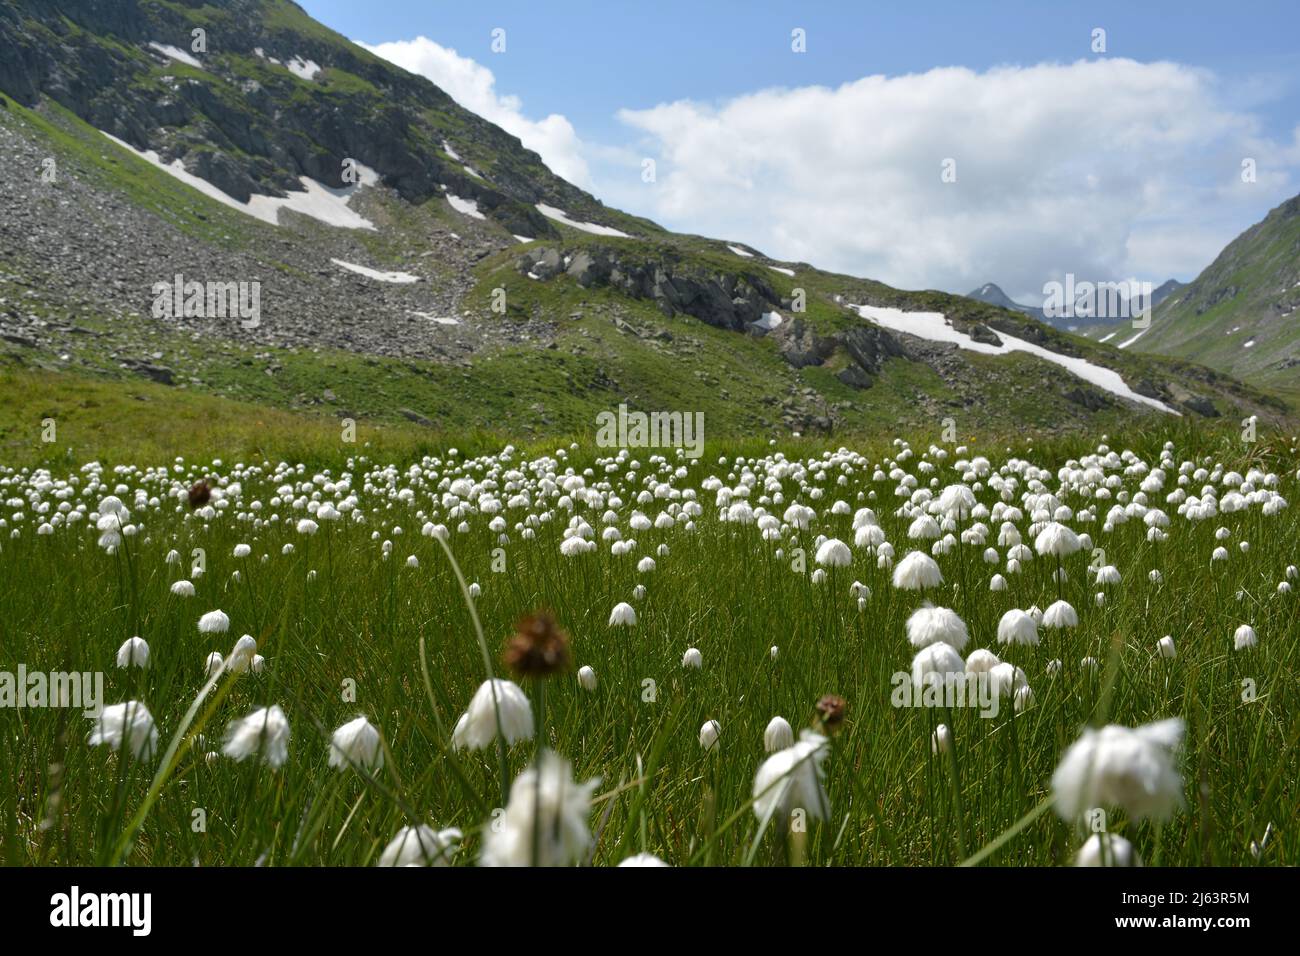 pâturage de montagne ressemblant à un champ de coton dans les montagnes. Foto Shoot à Surselva, Suisse. Banque D'Images